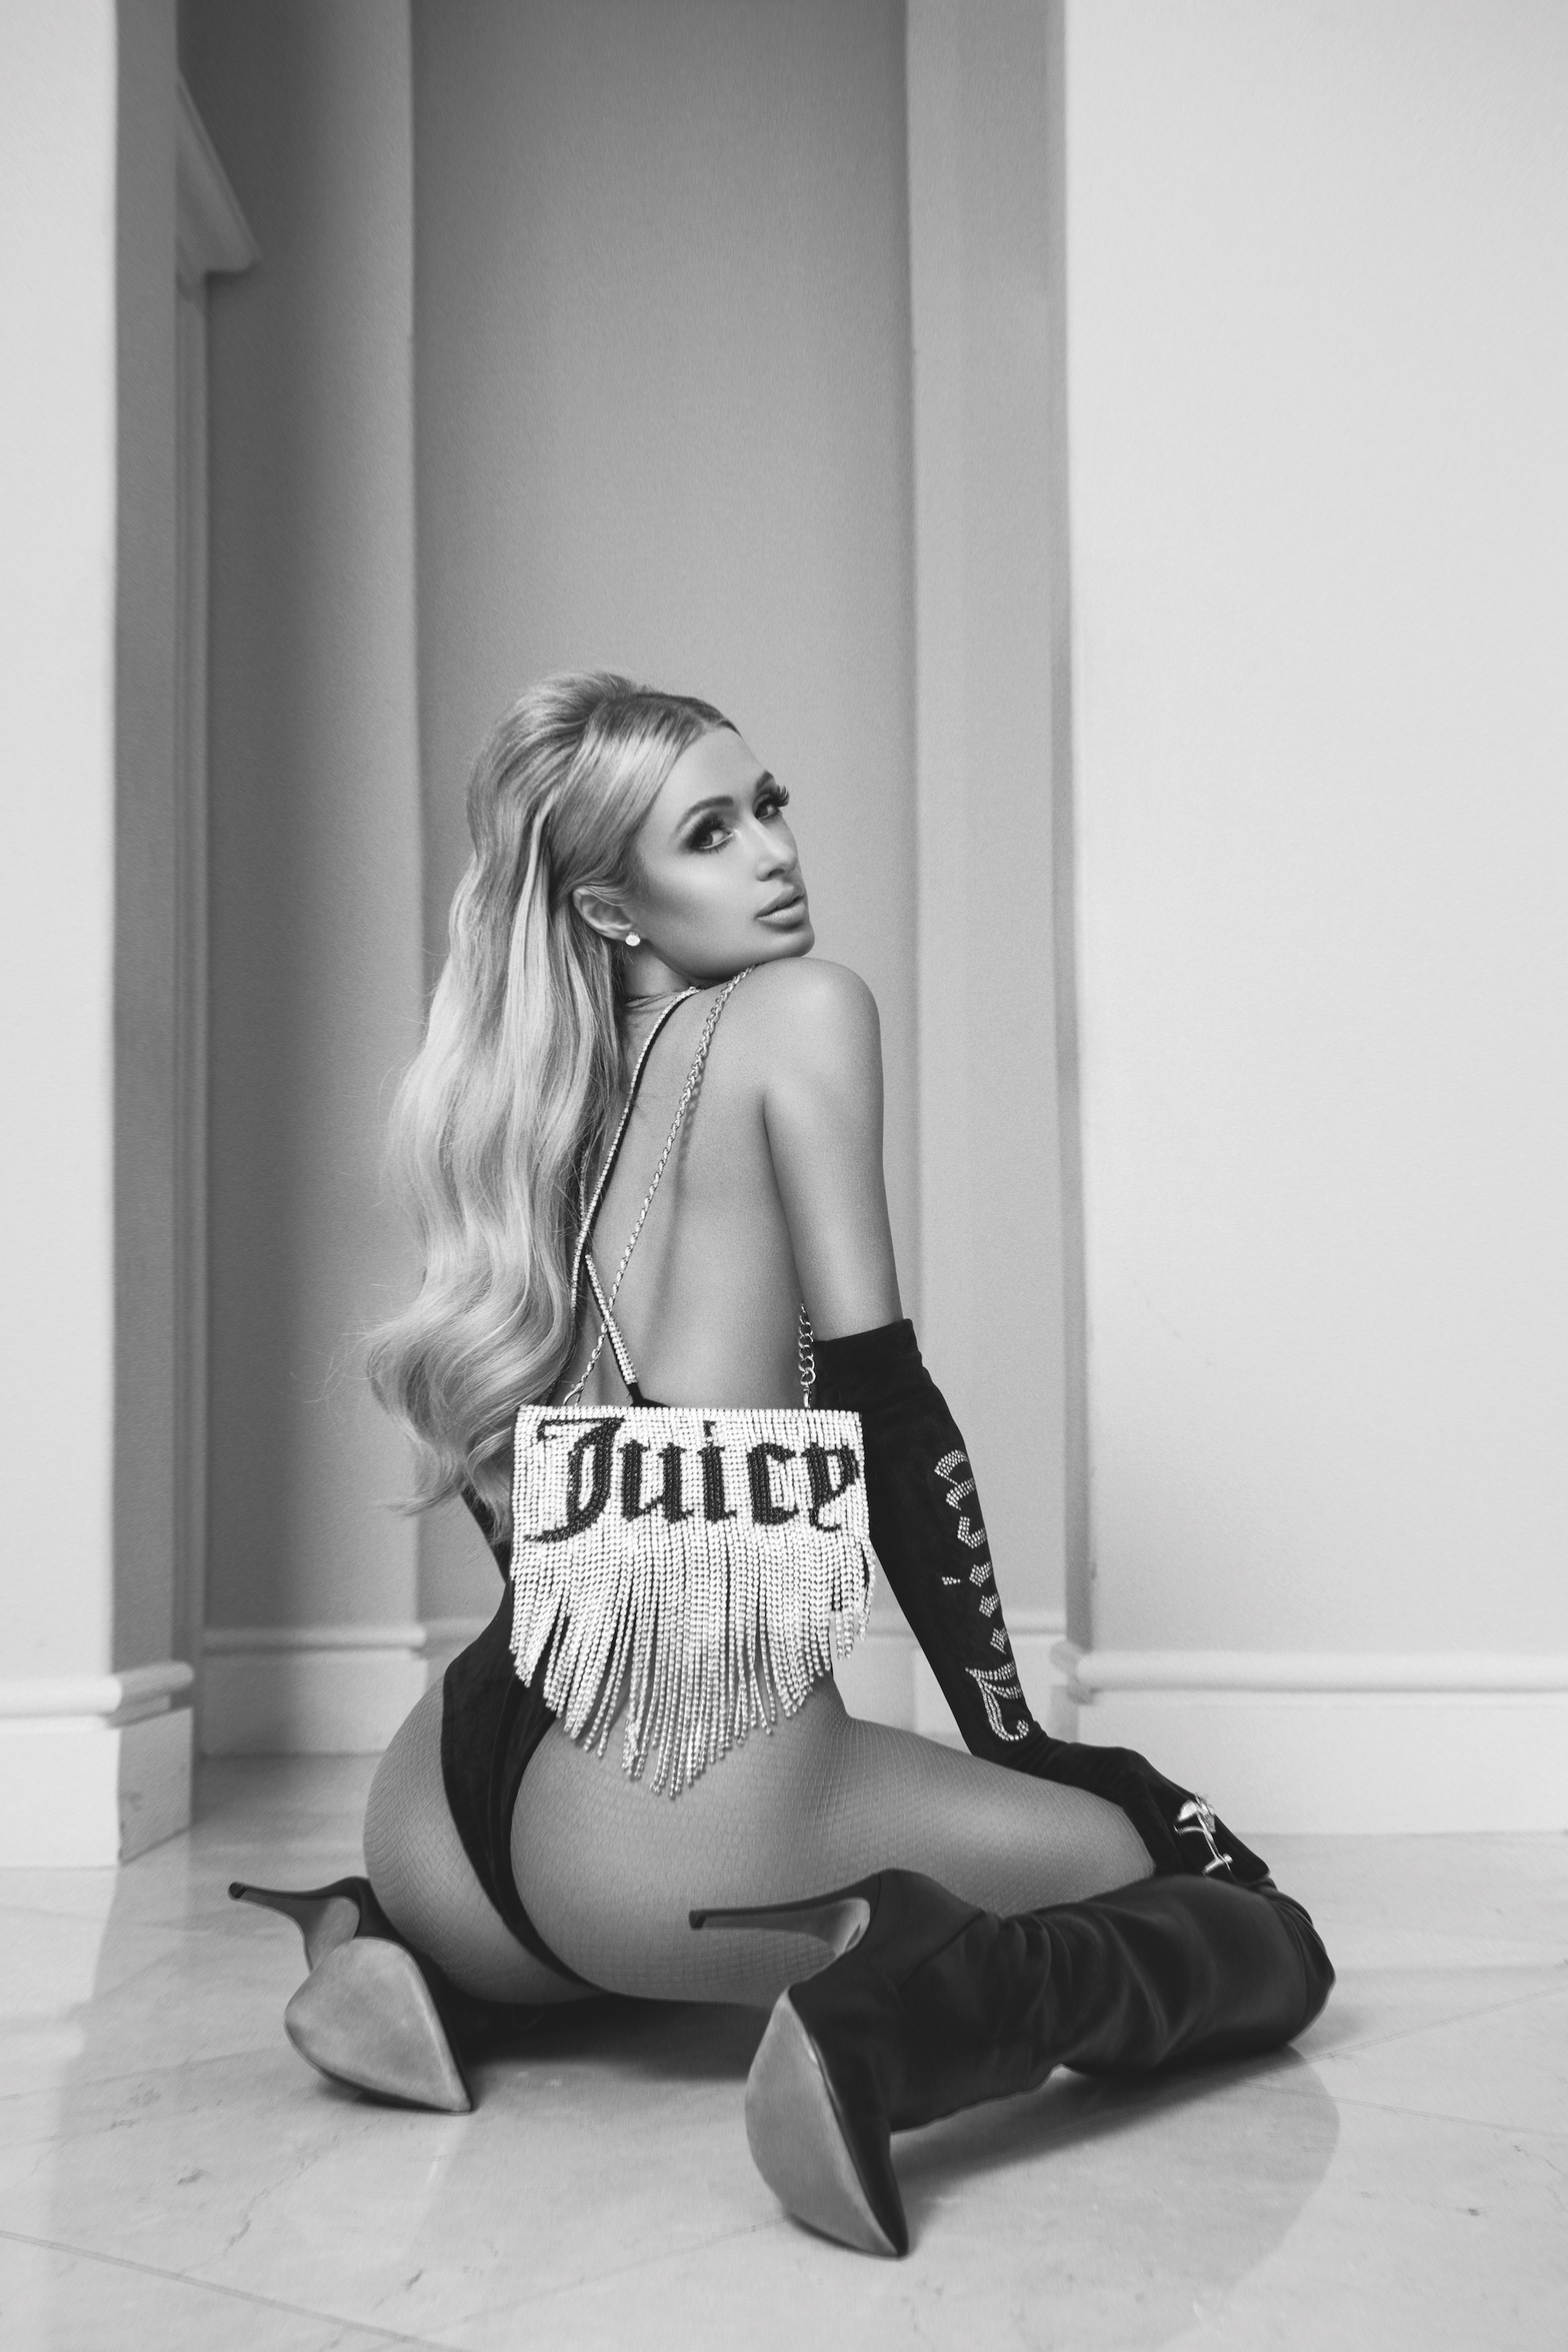 FOTOS Paris Hilton Reozing Sex Appeal en New Shoot!